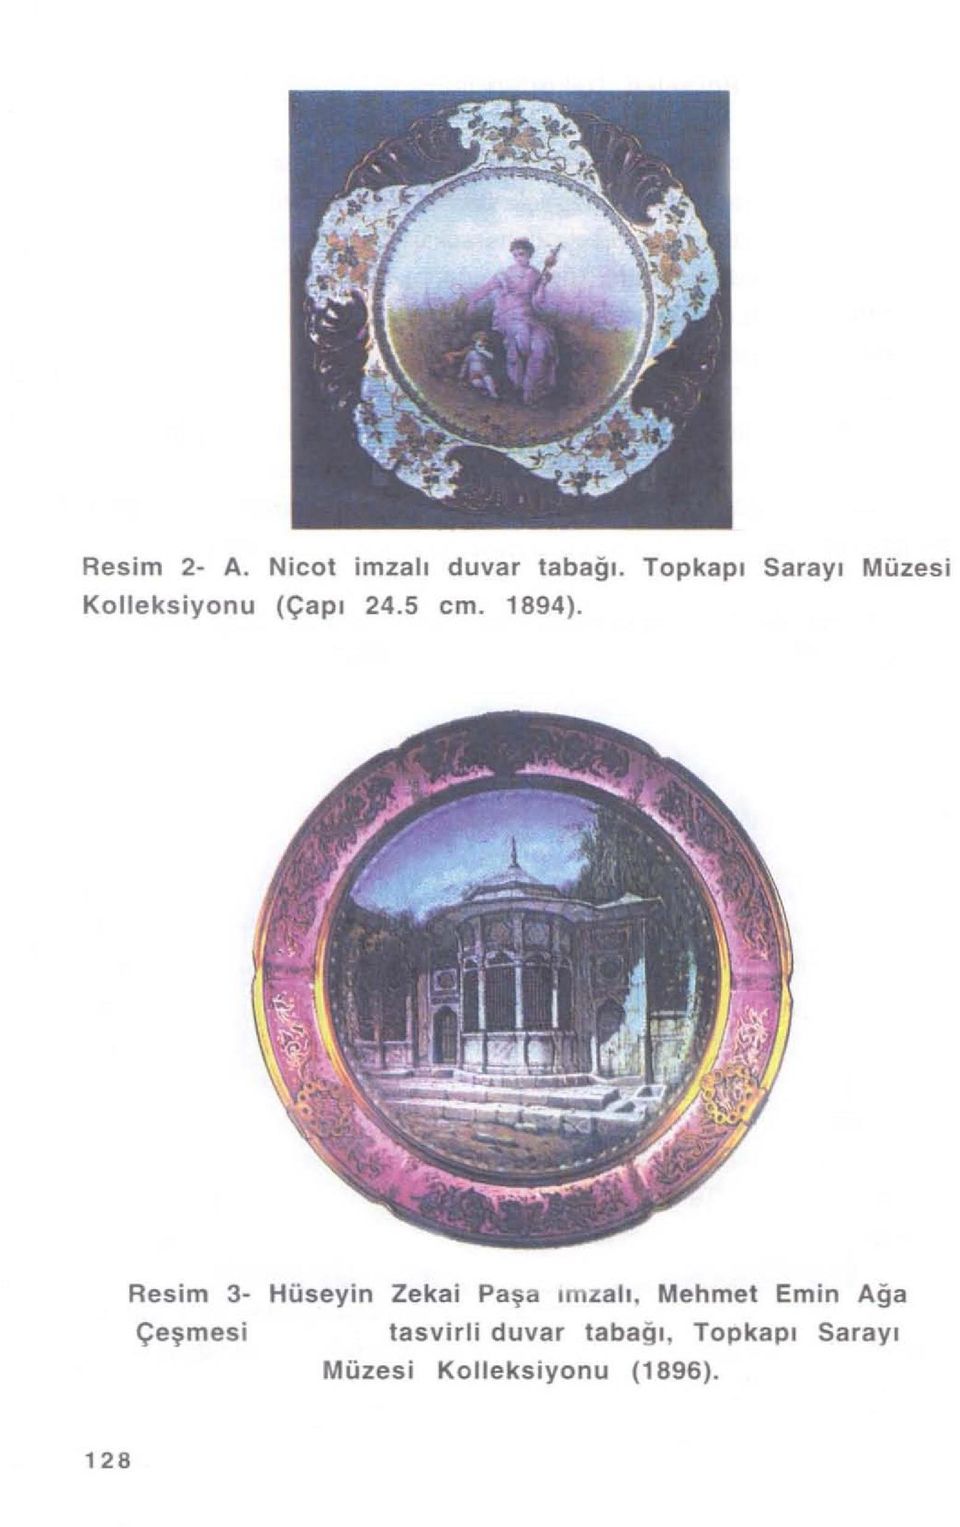 Resim 3 Çeşmes i Hüseyin Zekai Paşa ı mzatı, Mehmet Emin